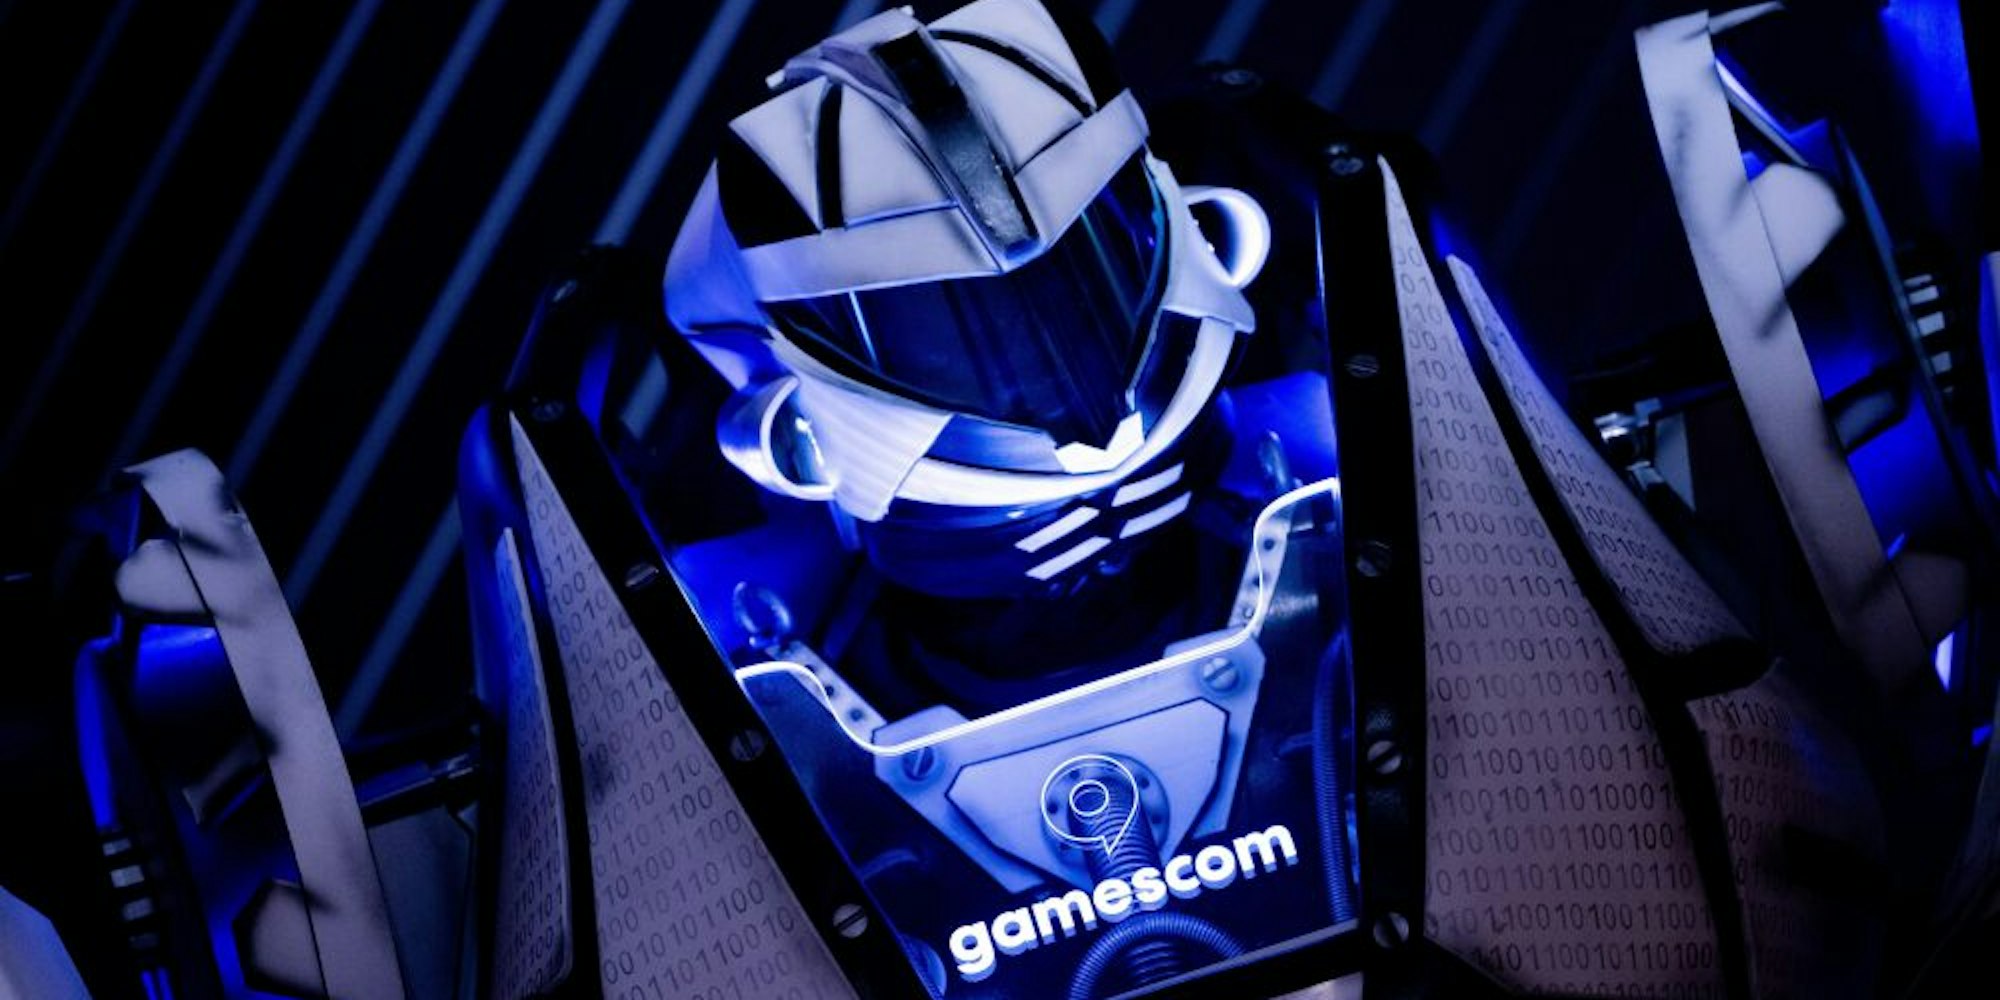 Der Gamesbot, ein übermenschlich großer Roboter mit dem Logo der Gamescom, kann in einer Woche wieder Messebesucher vor Ort begrüßen.